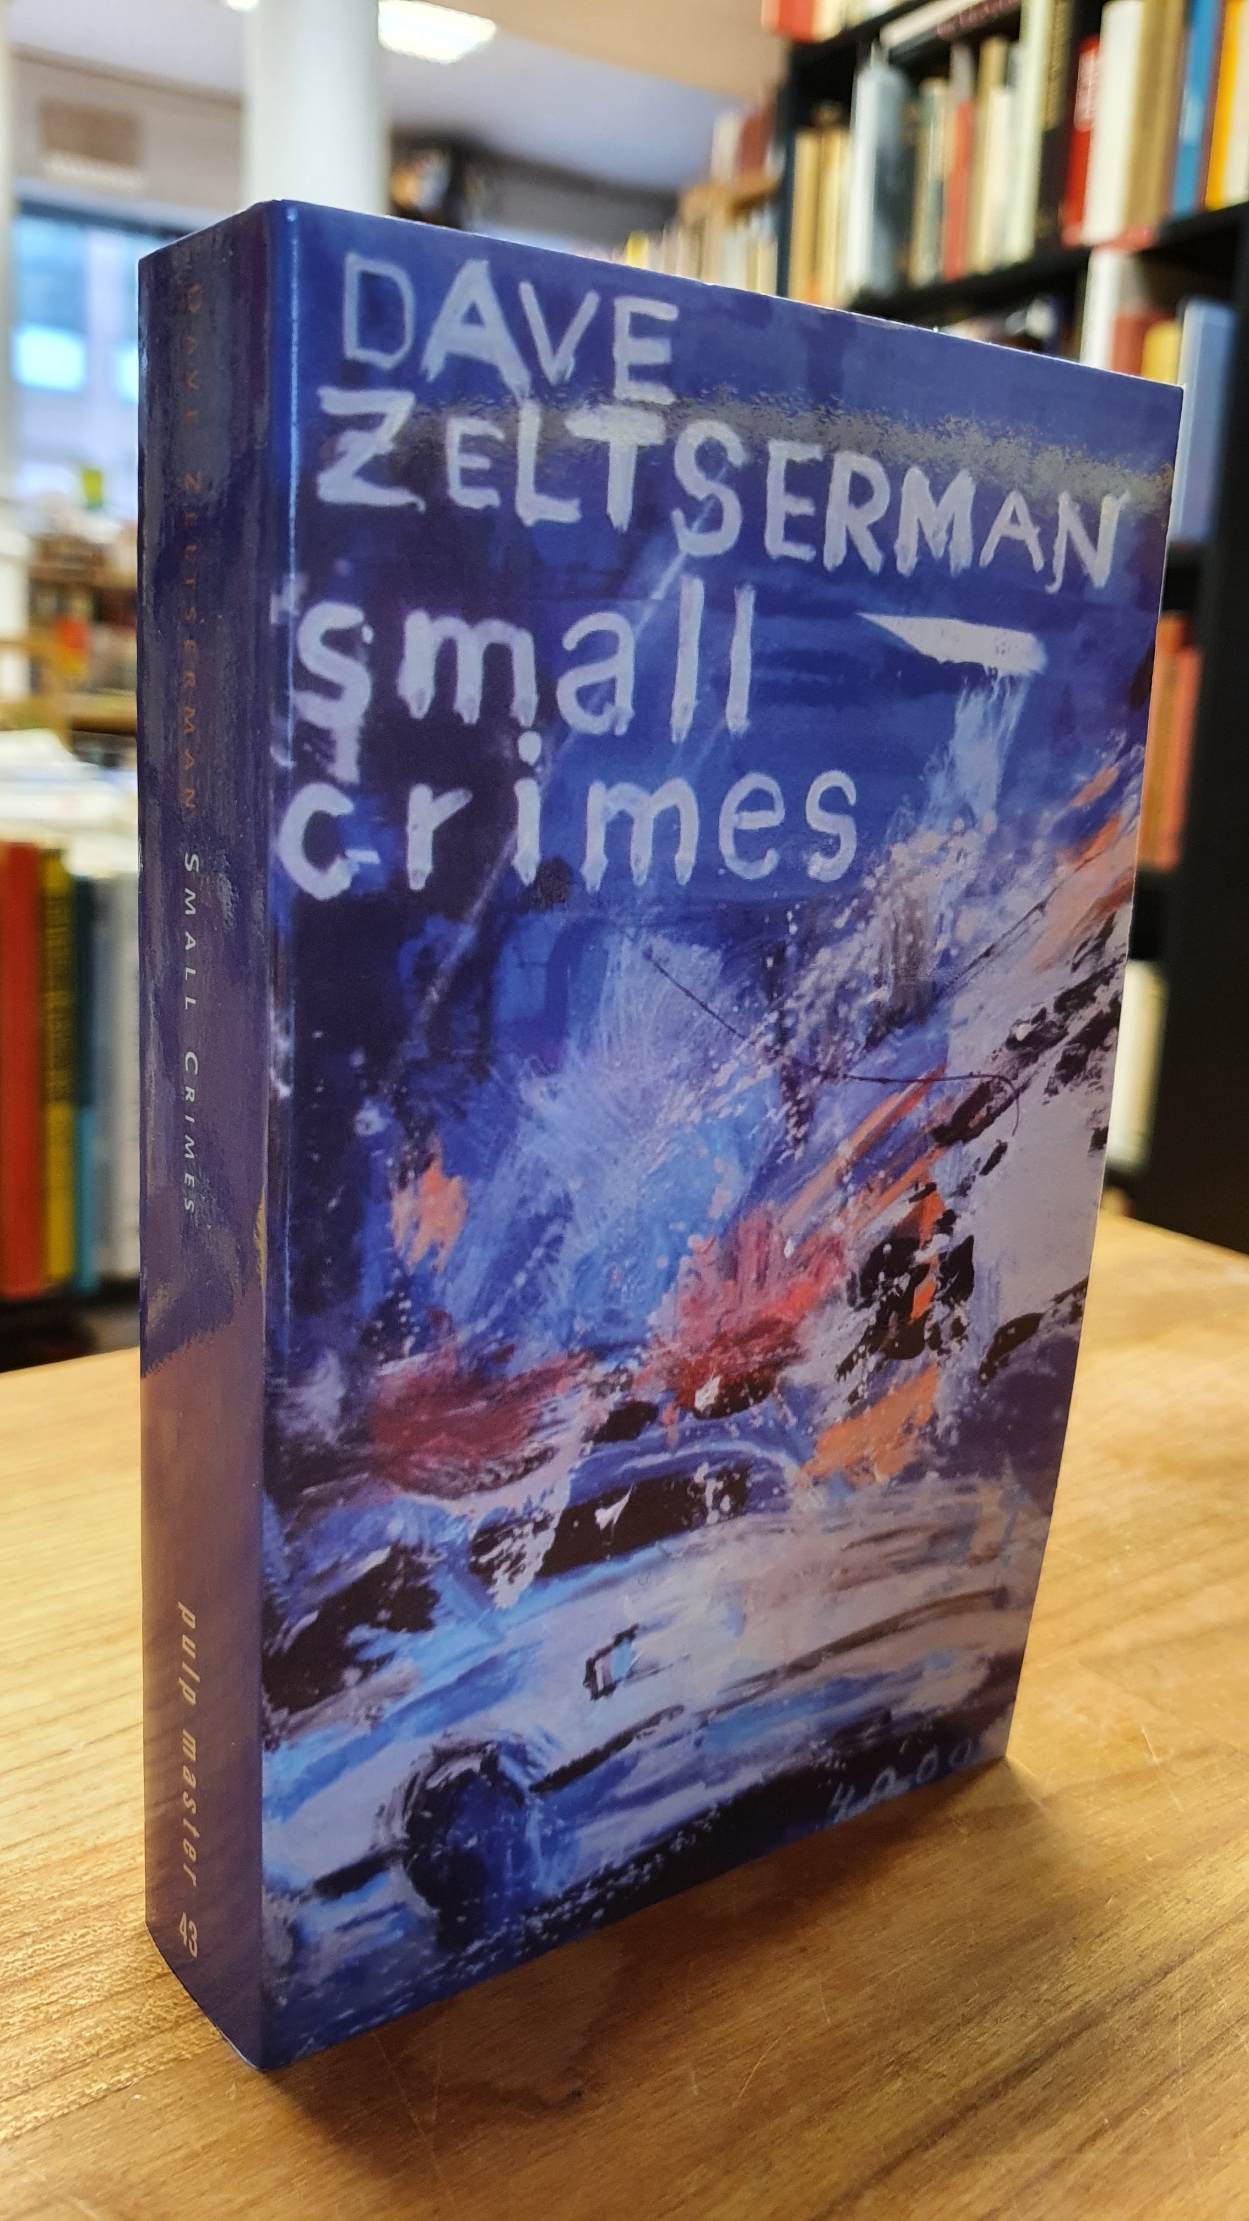 Zeltserman, Small Crimes,